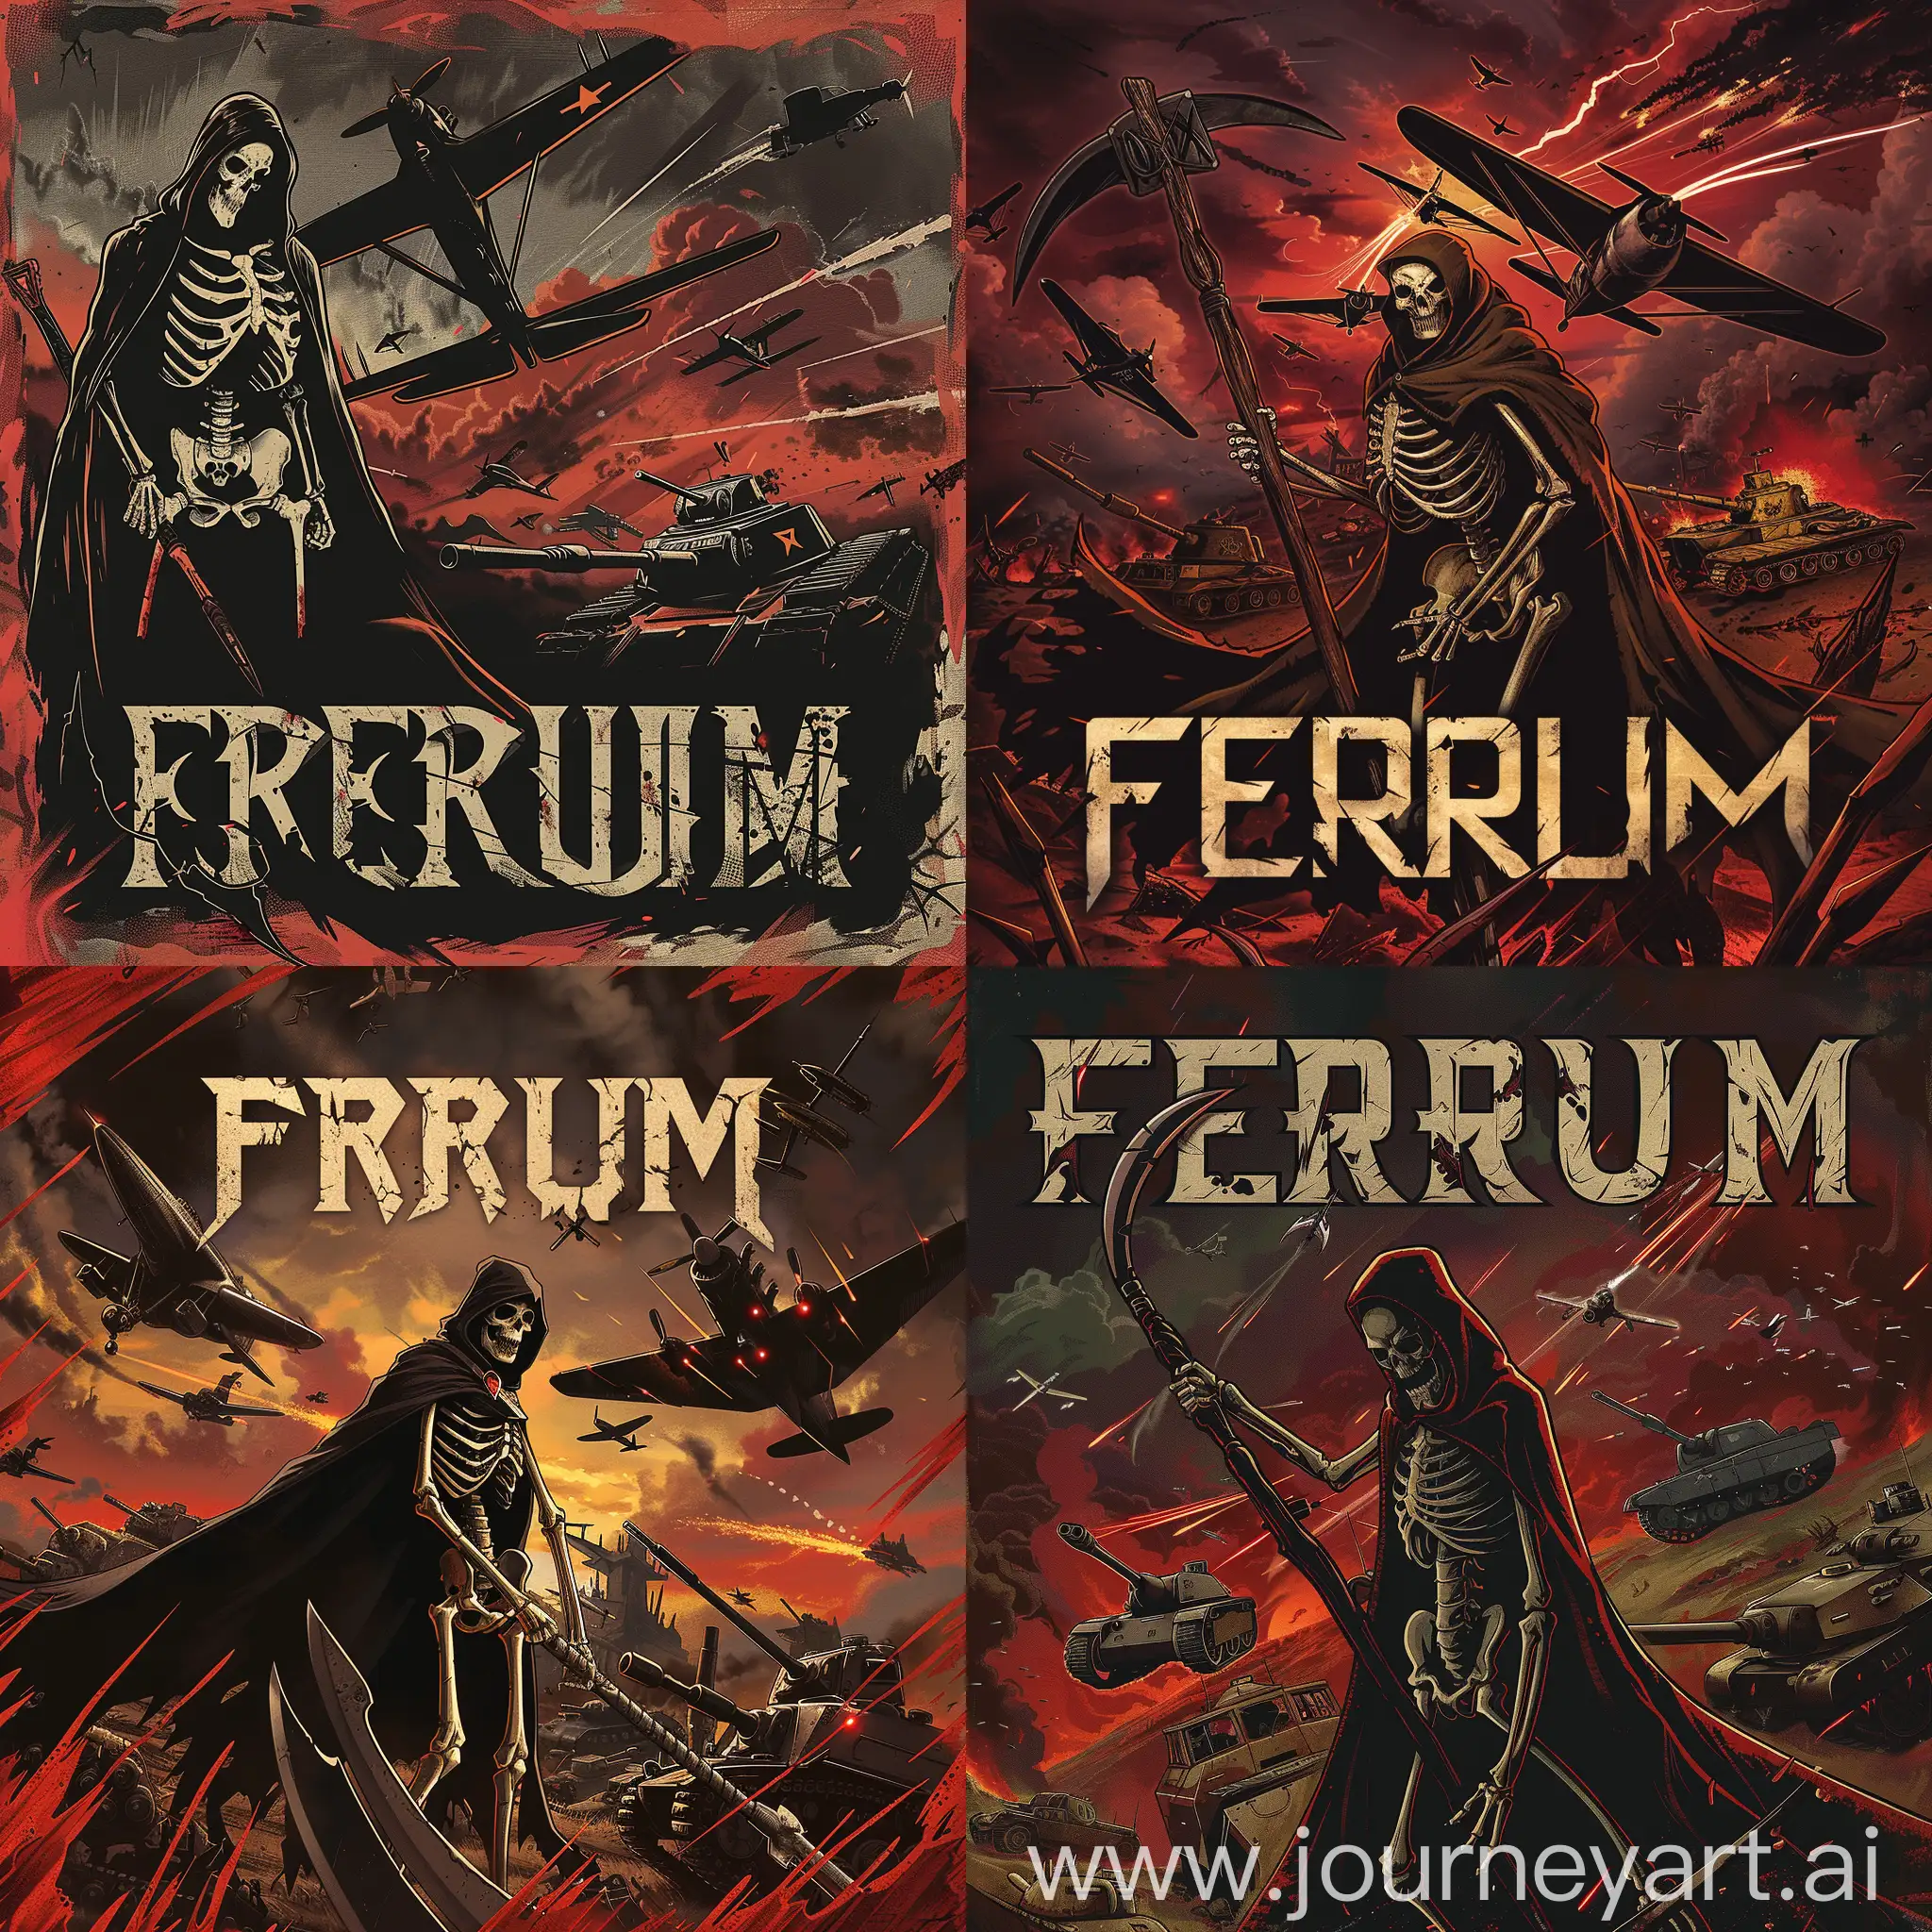 Логотип для полка в игре , на заднем фоне скелет в мантии с косой и адские танки и самолеты , на переднем плане надпись FERUM с подтеками, много мрака темных оттенков и красных
